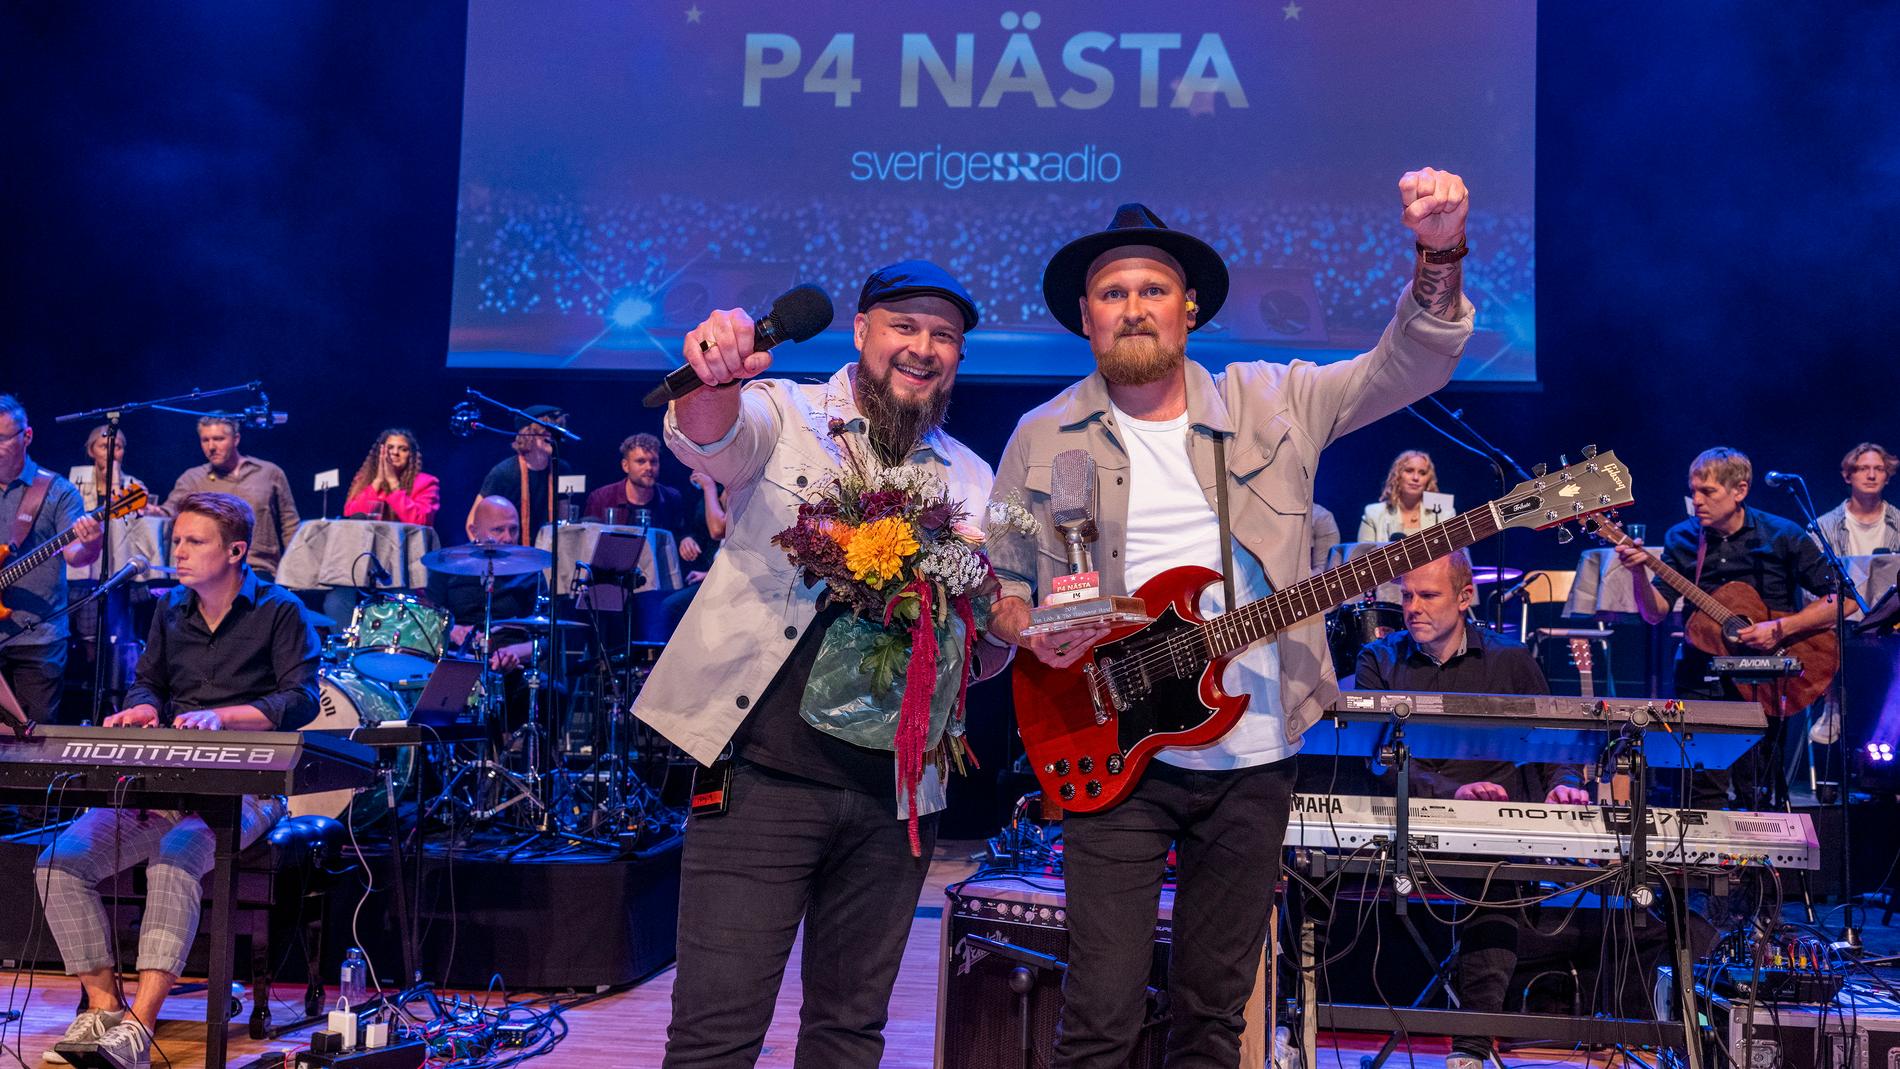 Adam Warnskog och Mattias Åström i duon M.W kommer nu att höras i P4 med låten "Feels". Pressbild.